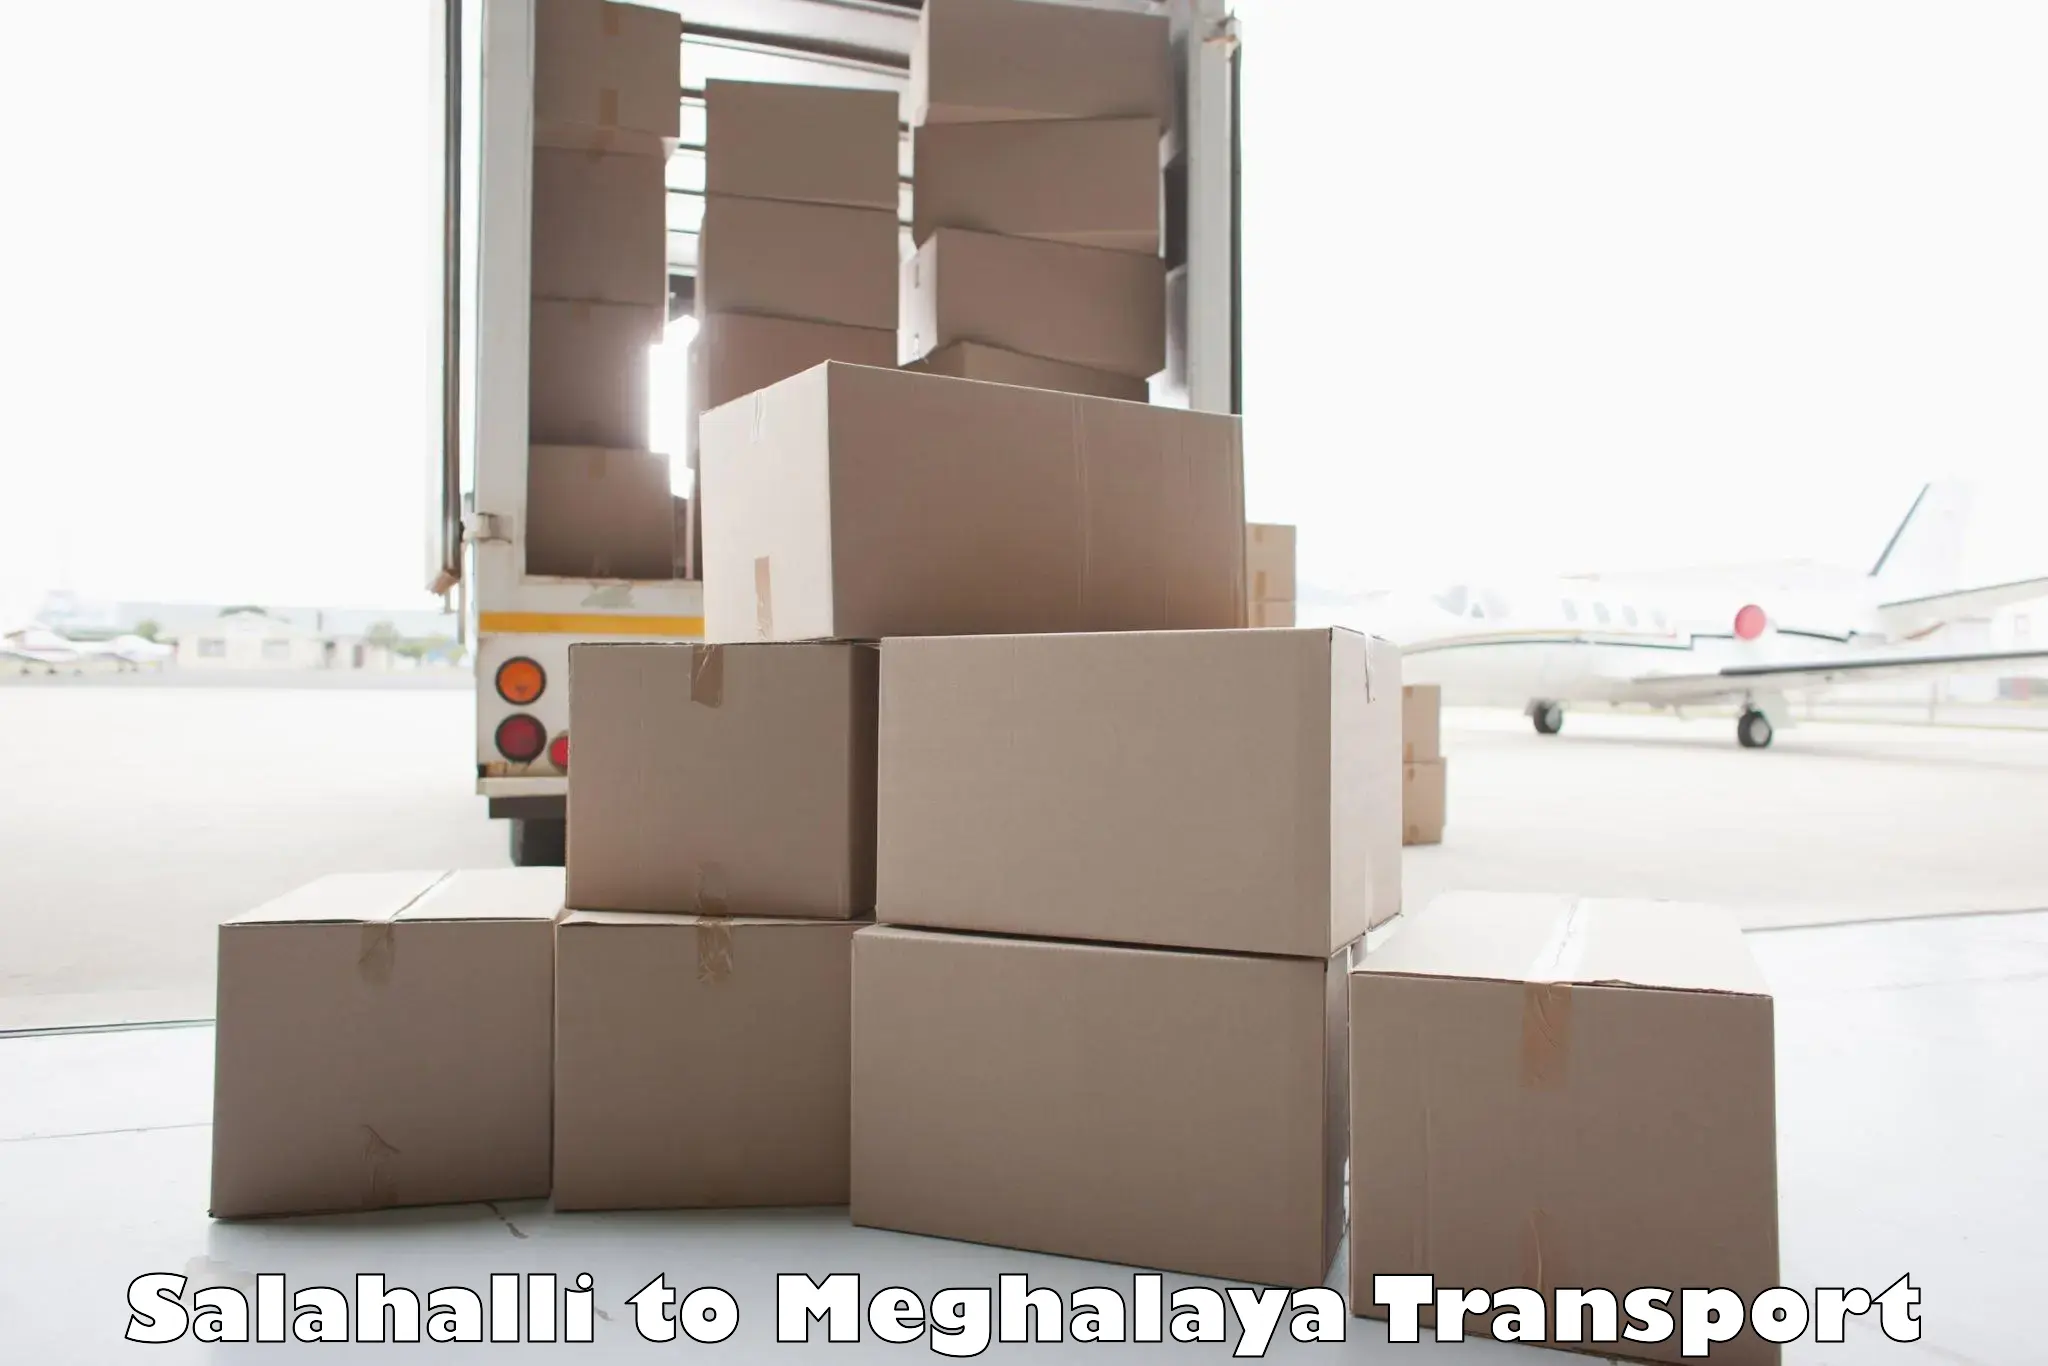 Cargo transportation services Salahalli to Cherrapunji